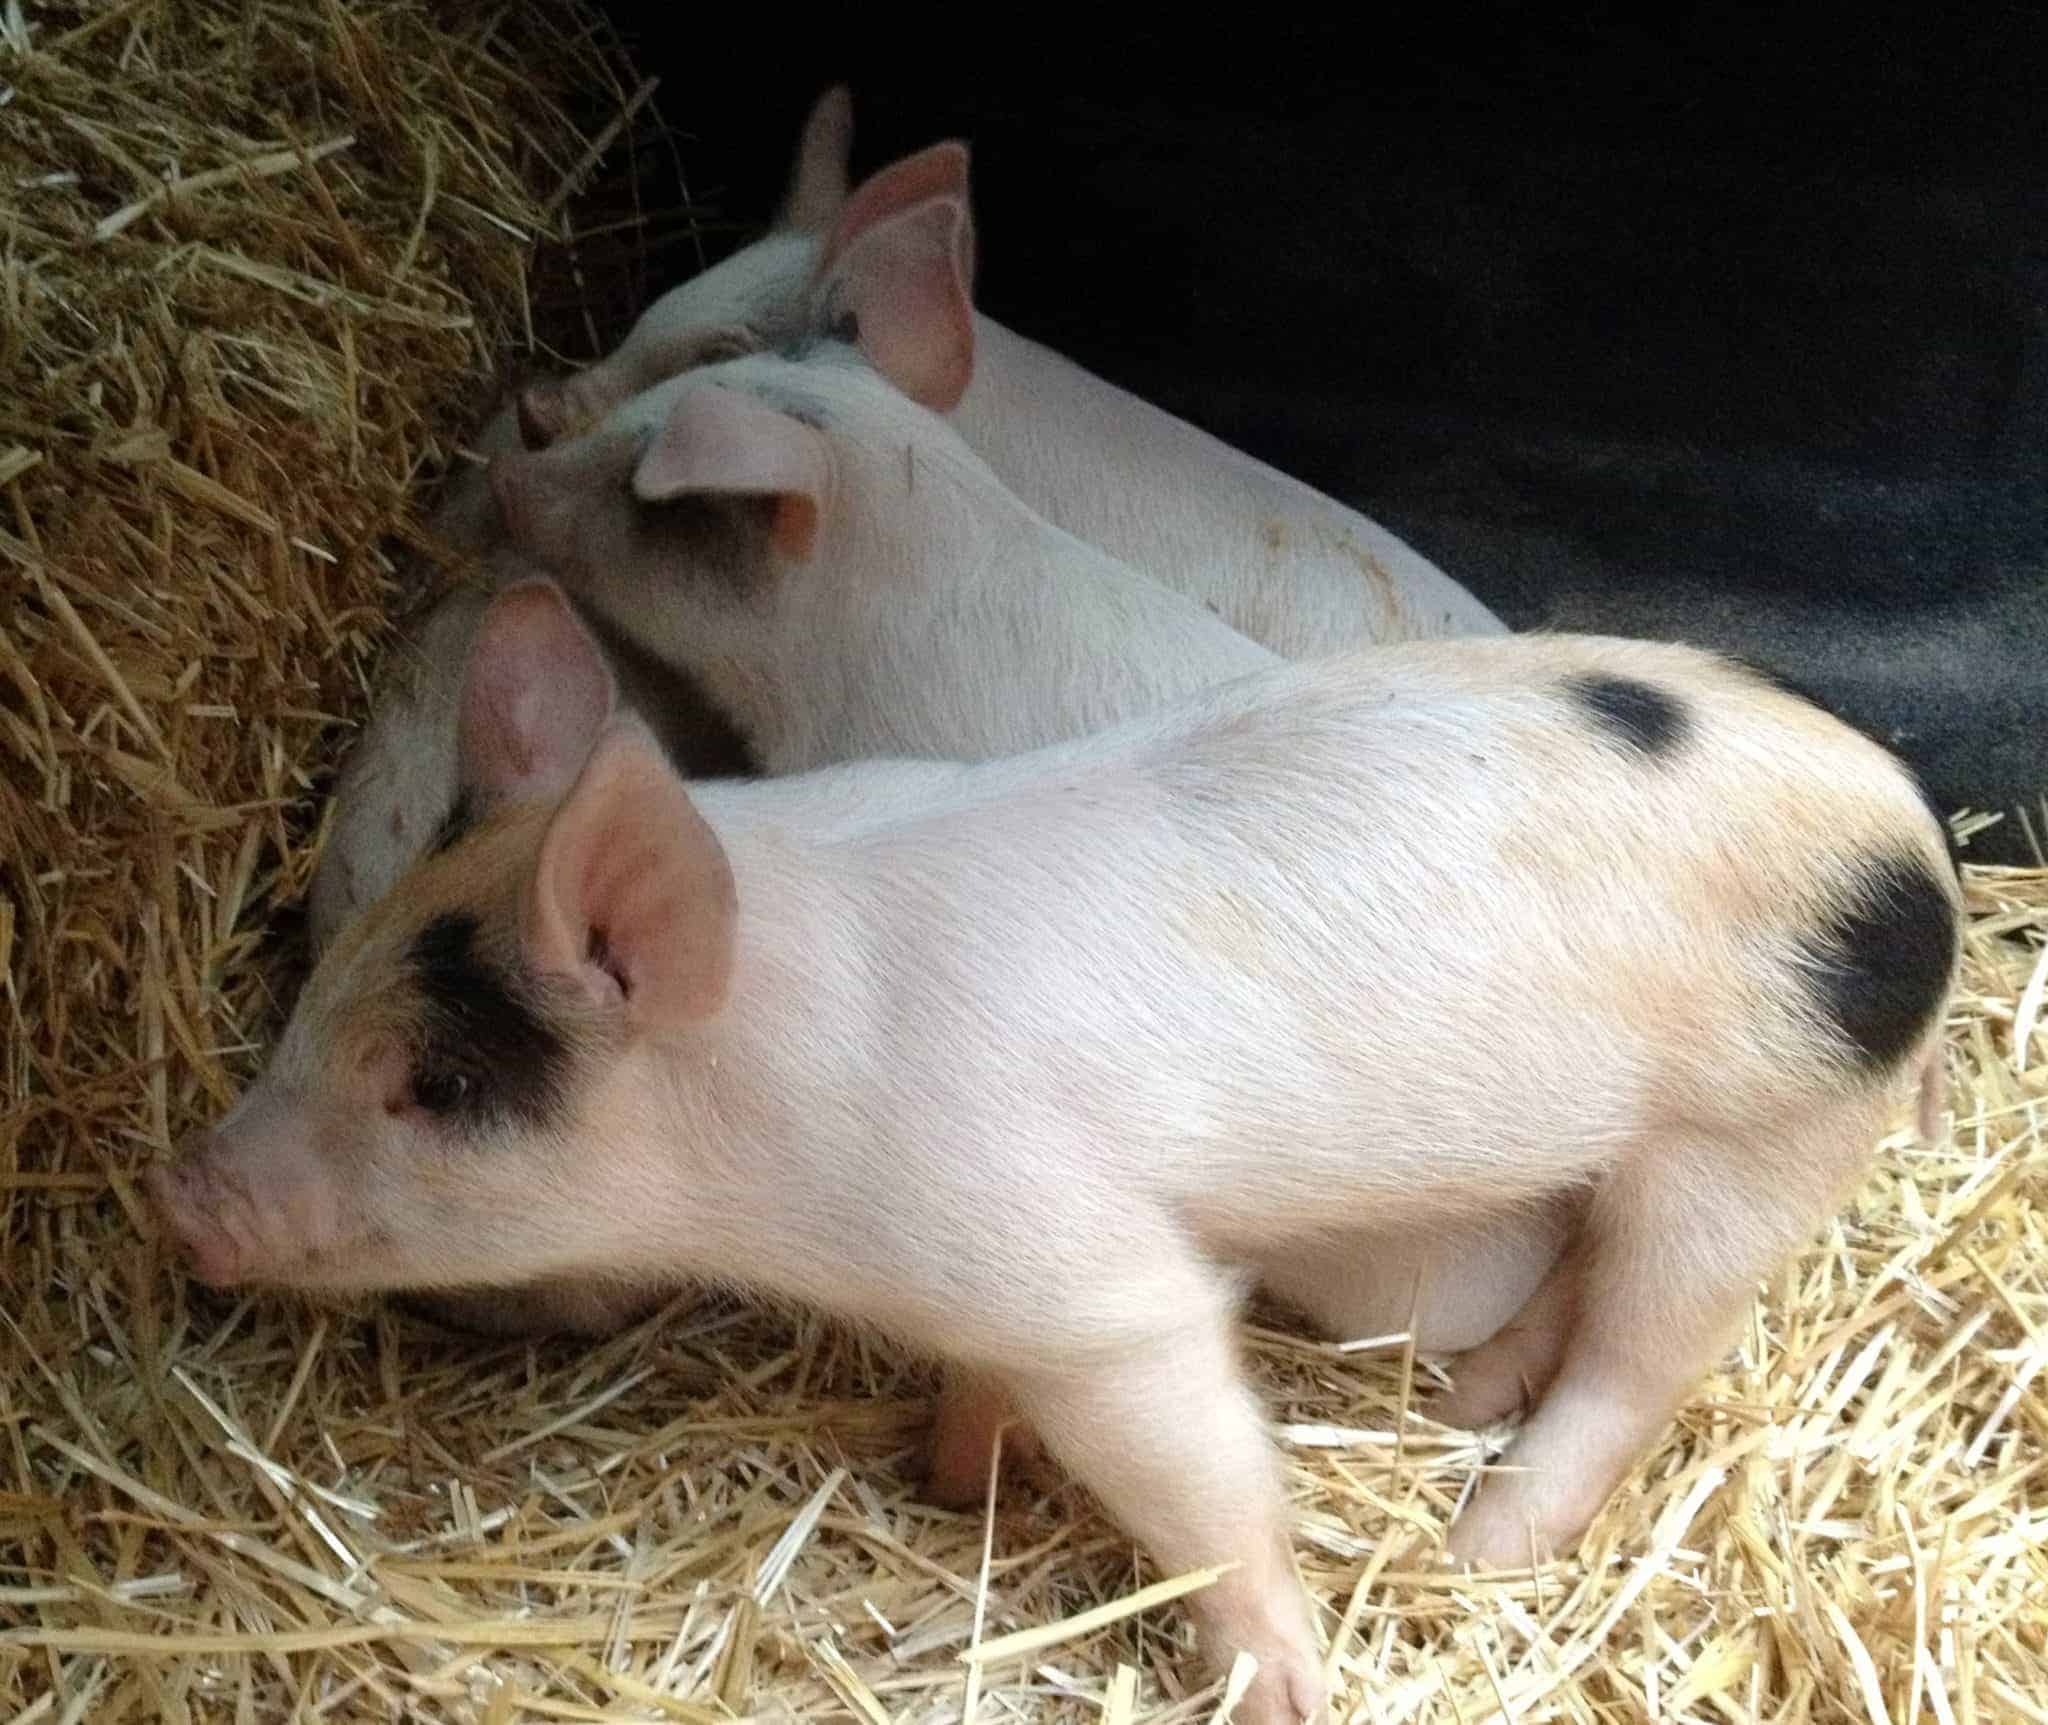 Little Piggies in fresh straw.